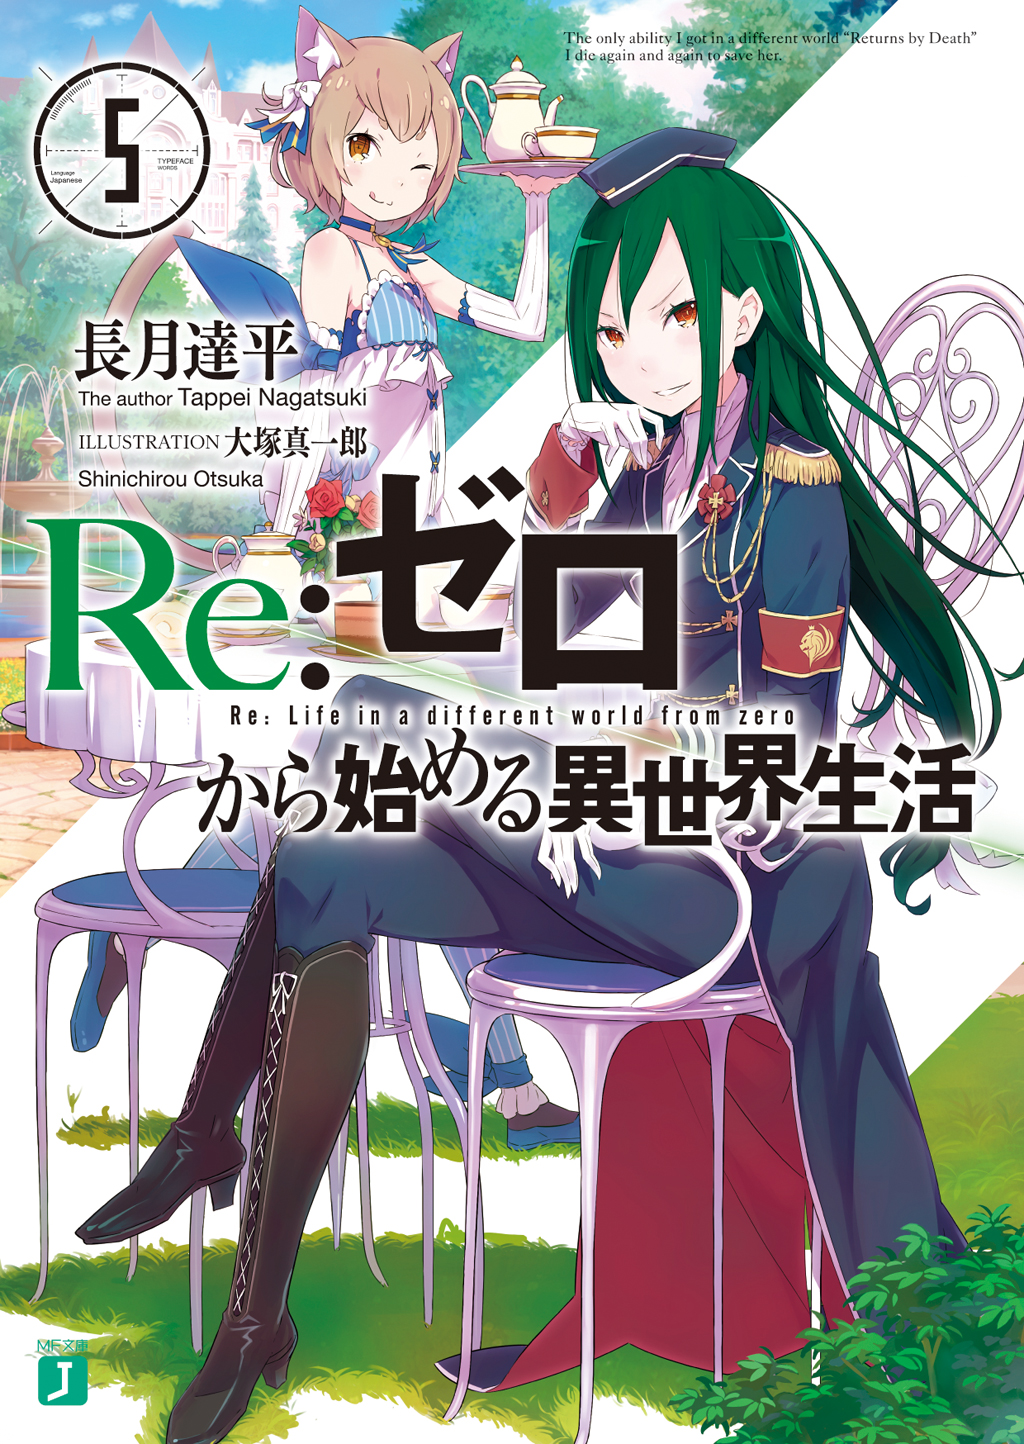 Re:ゼロから始める異世界生活、短編集、EX 文学/小説 本 本・音楽・ゲーム セール純正品